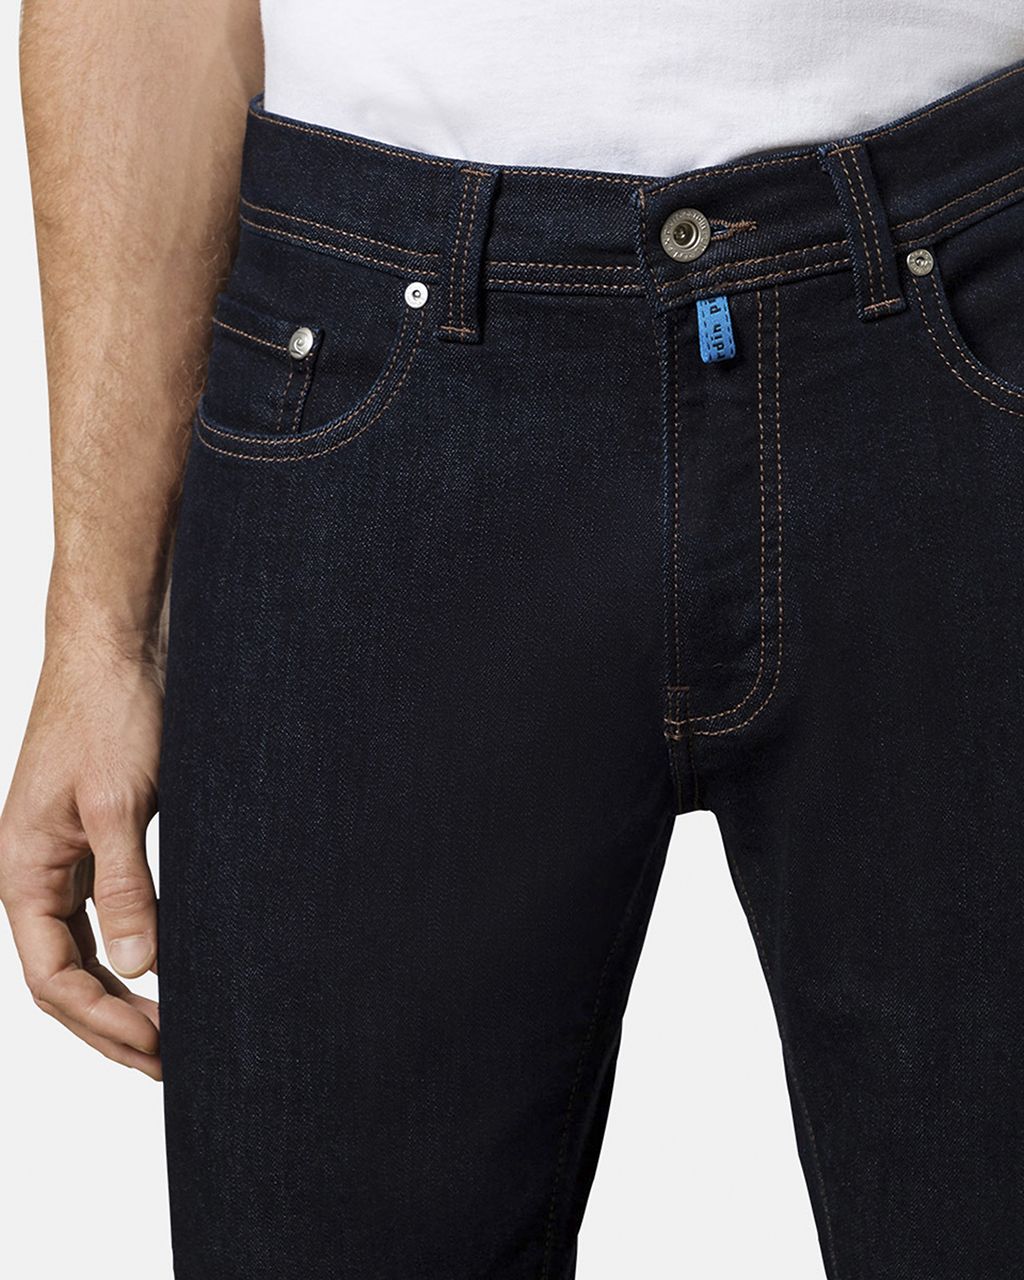 Gezond eten Meevoelen mezelf Pierre Cardin Lyon Future Flex Jeans | Shop nu - Only for Men